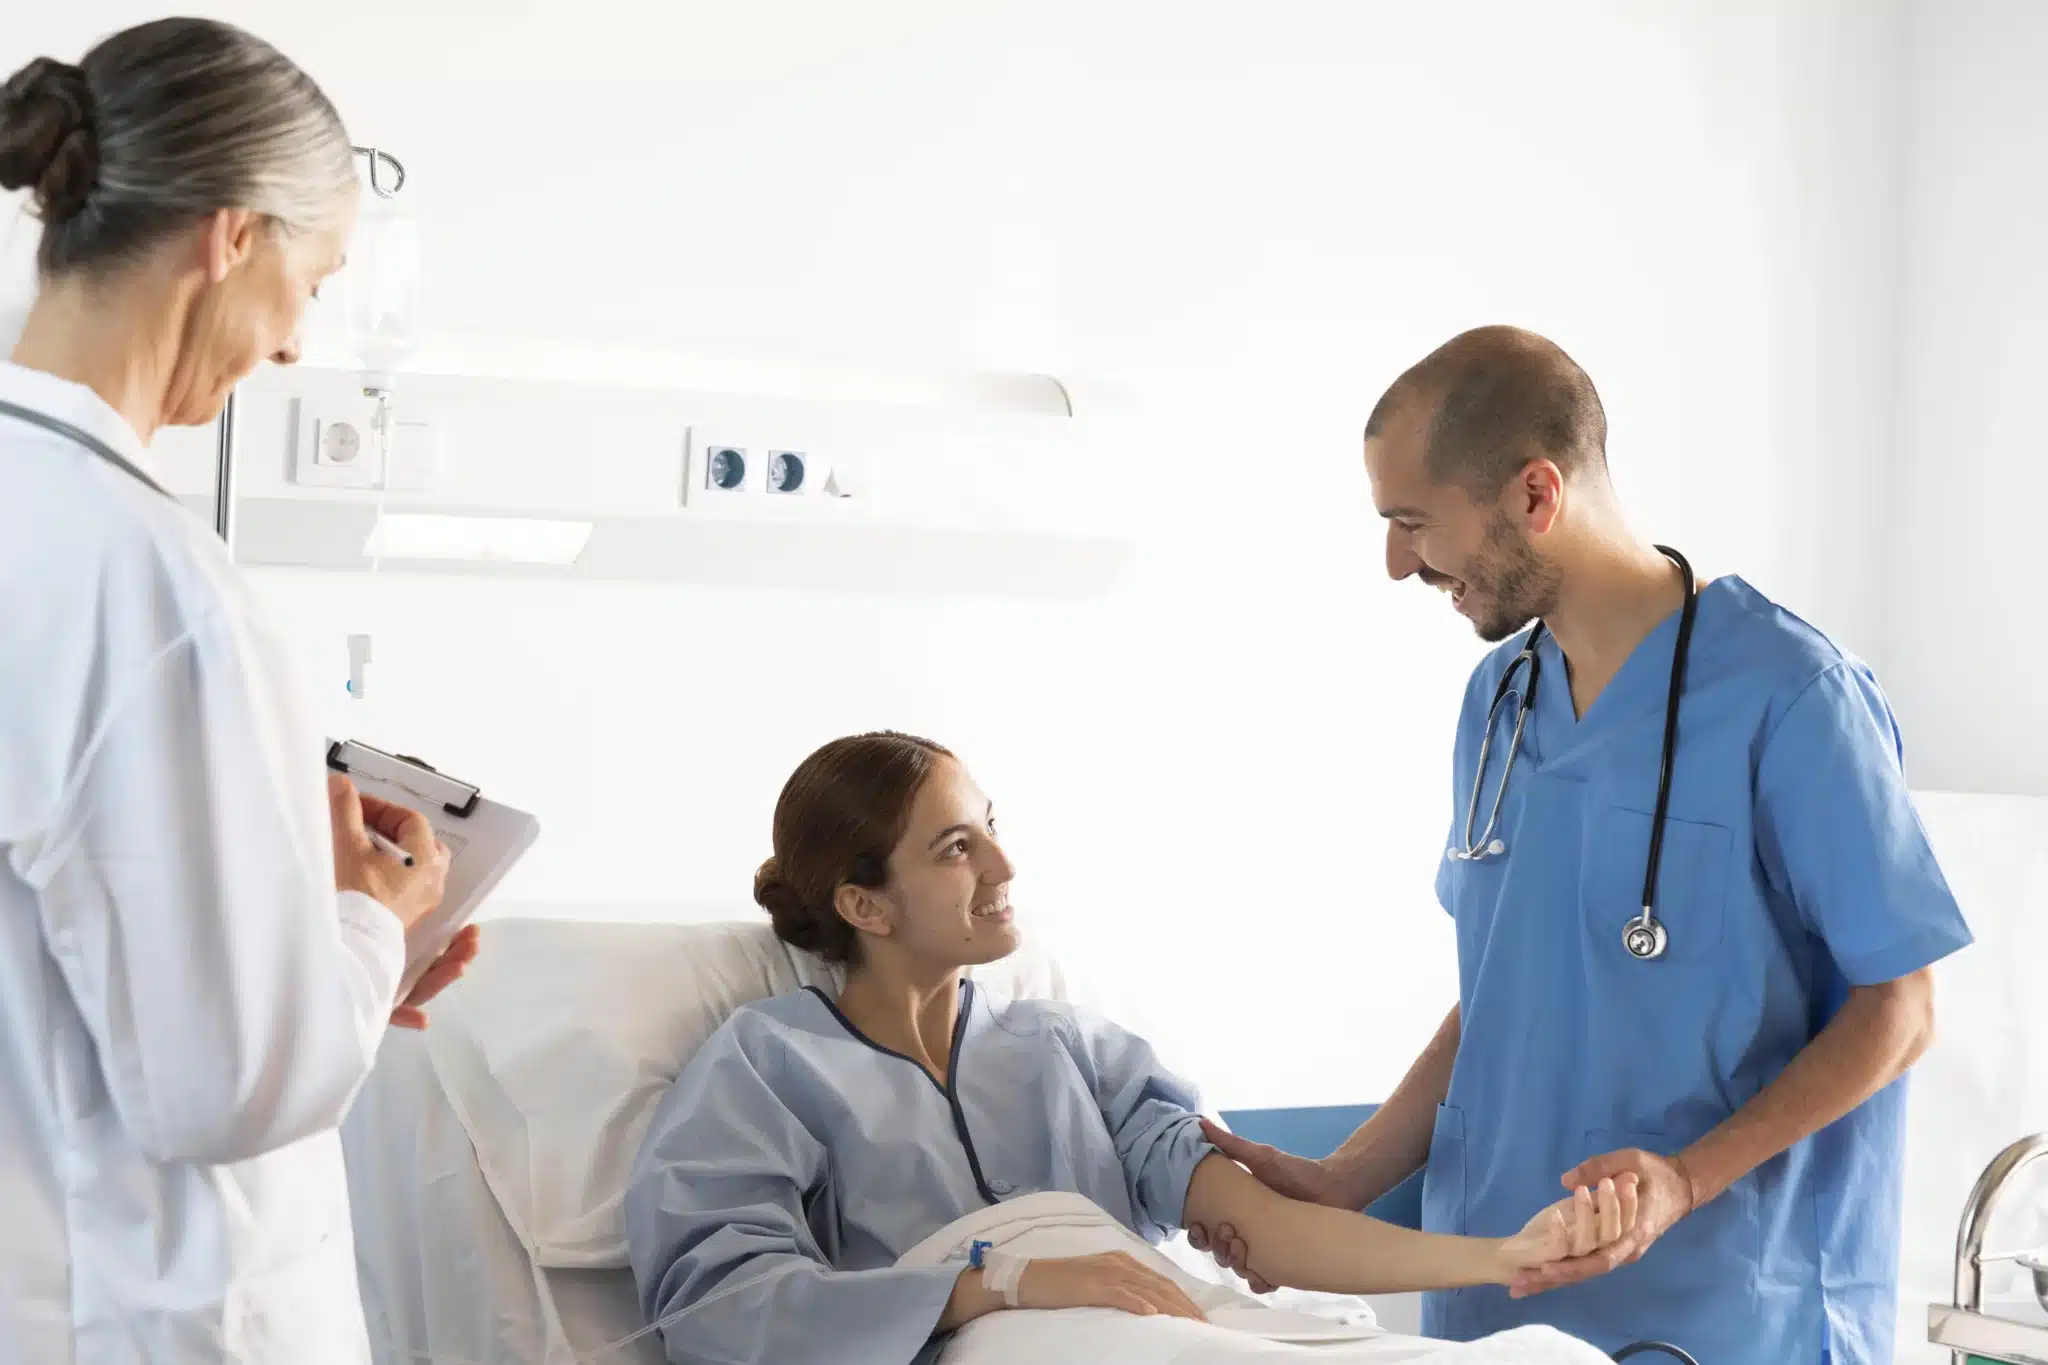 Comment Hospitalink améliore la communication entre patients et soignants pour une prise en charge plus efficace